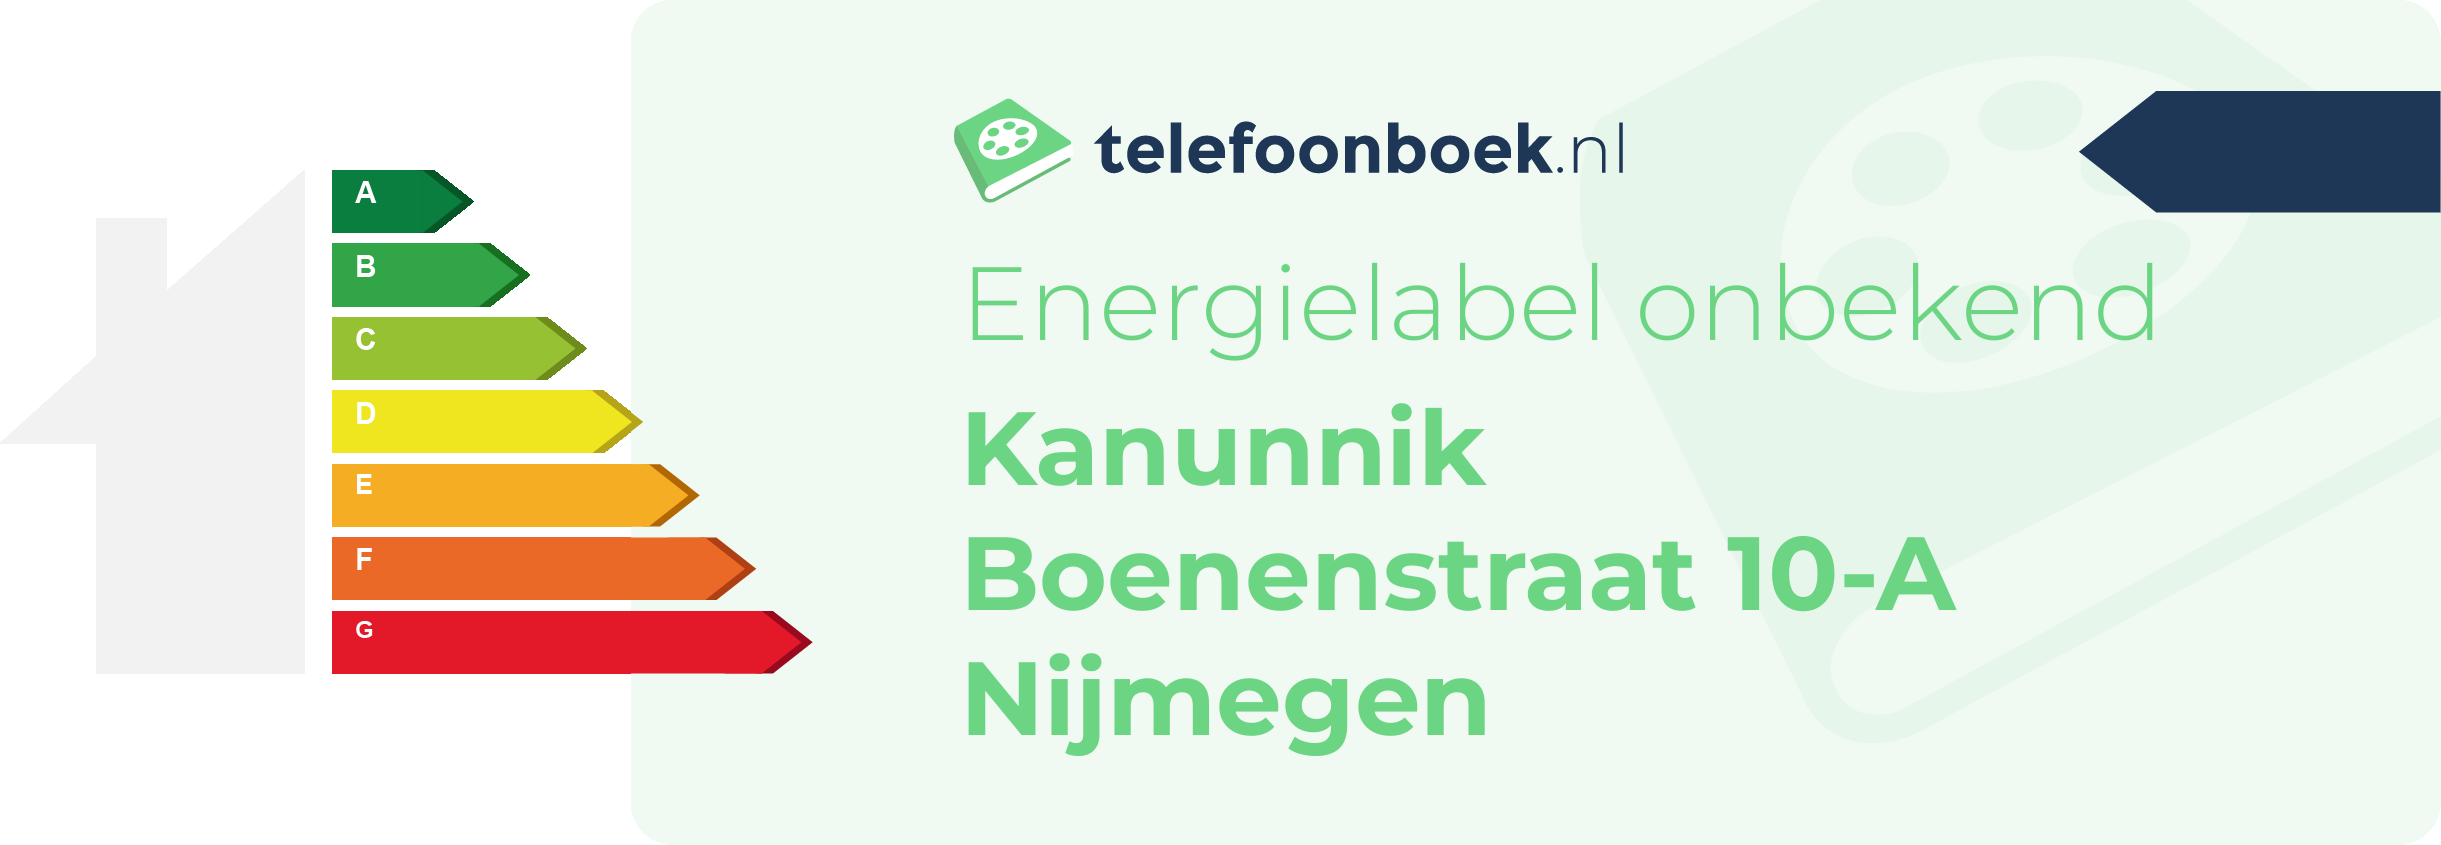 Energielabel Kanunnik Boenenstraat 10-A Nijmegen